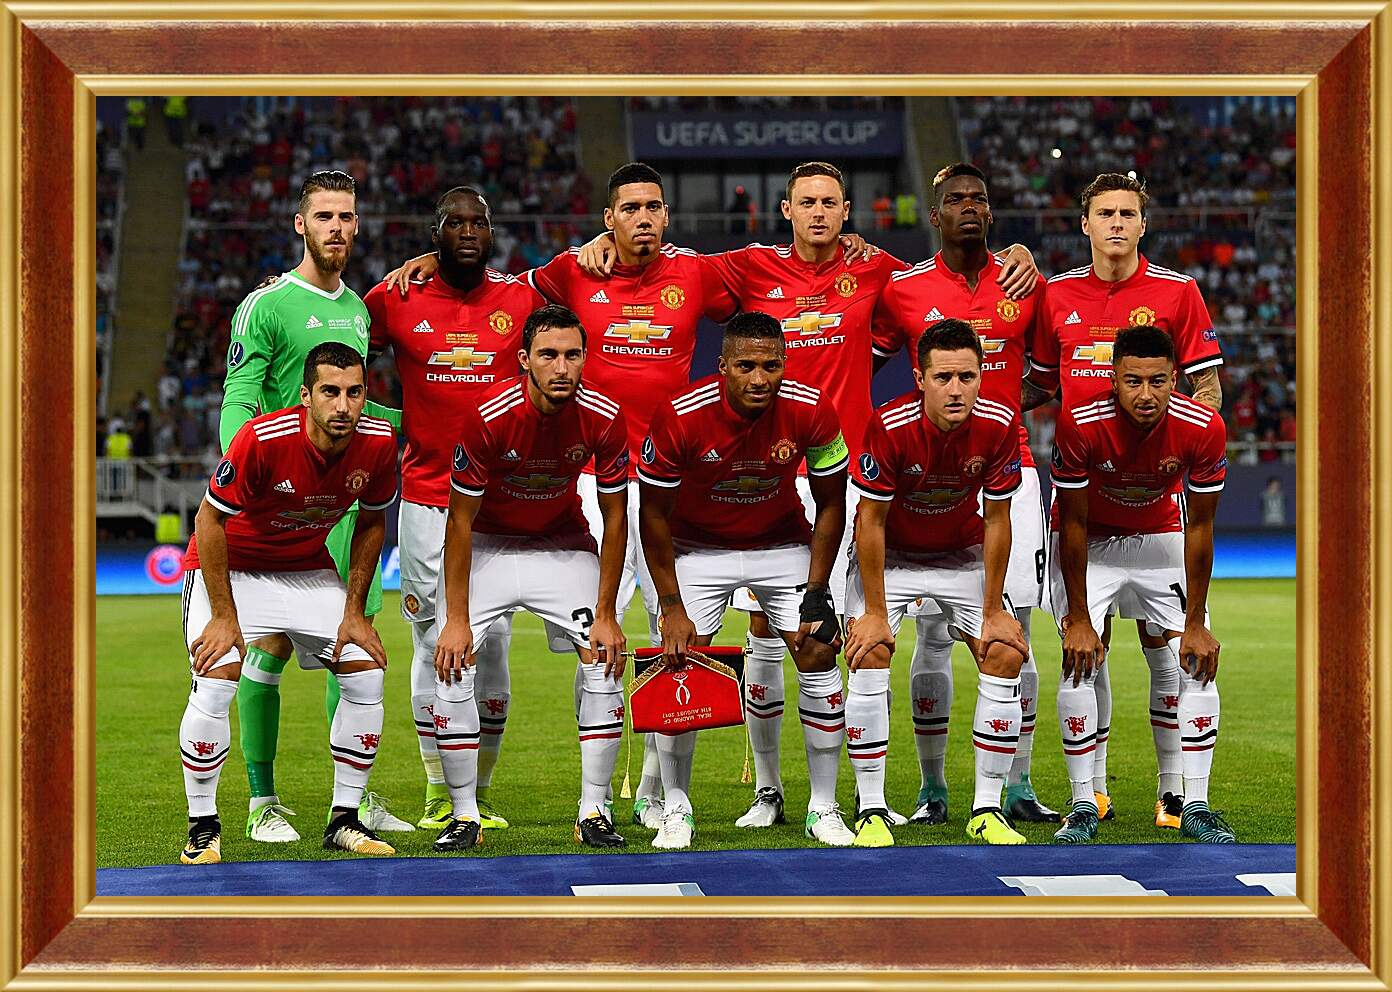 Картина в раме - Фото перед матчем ФК Манчестер Юнайтед